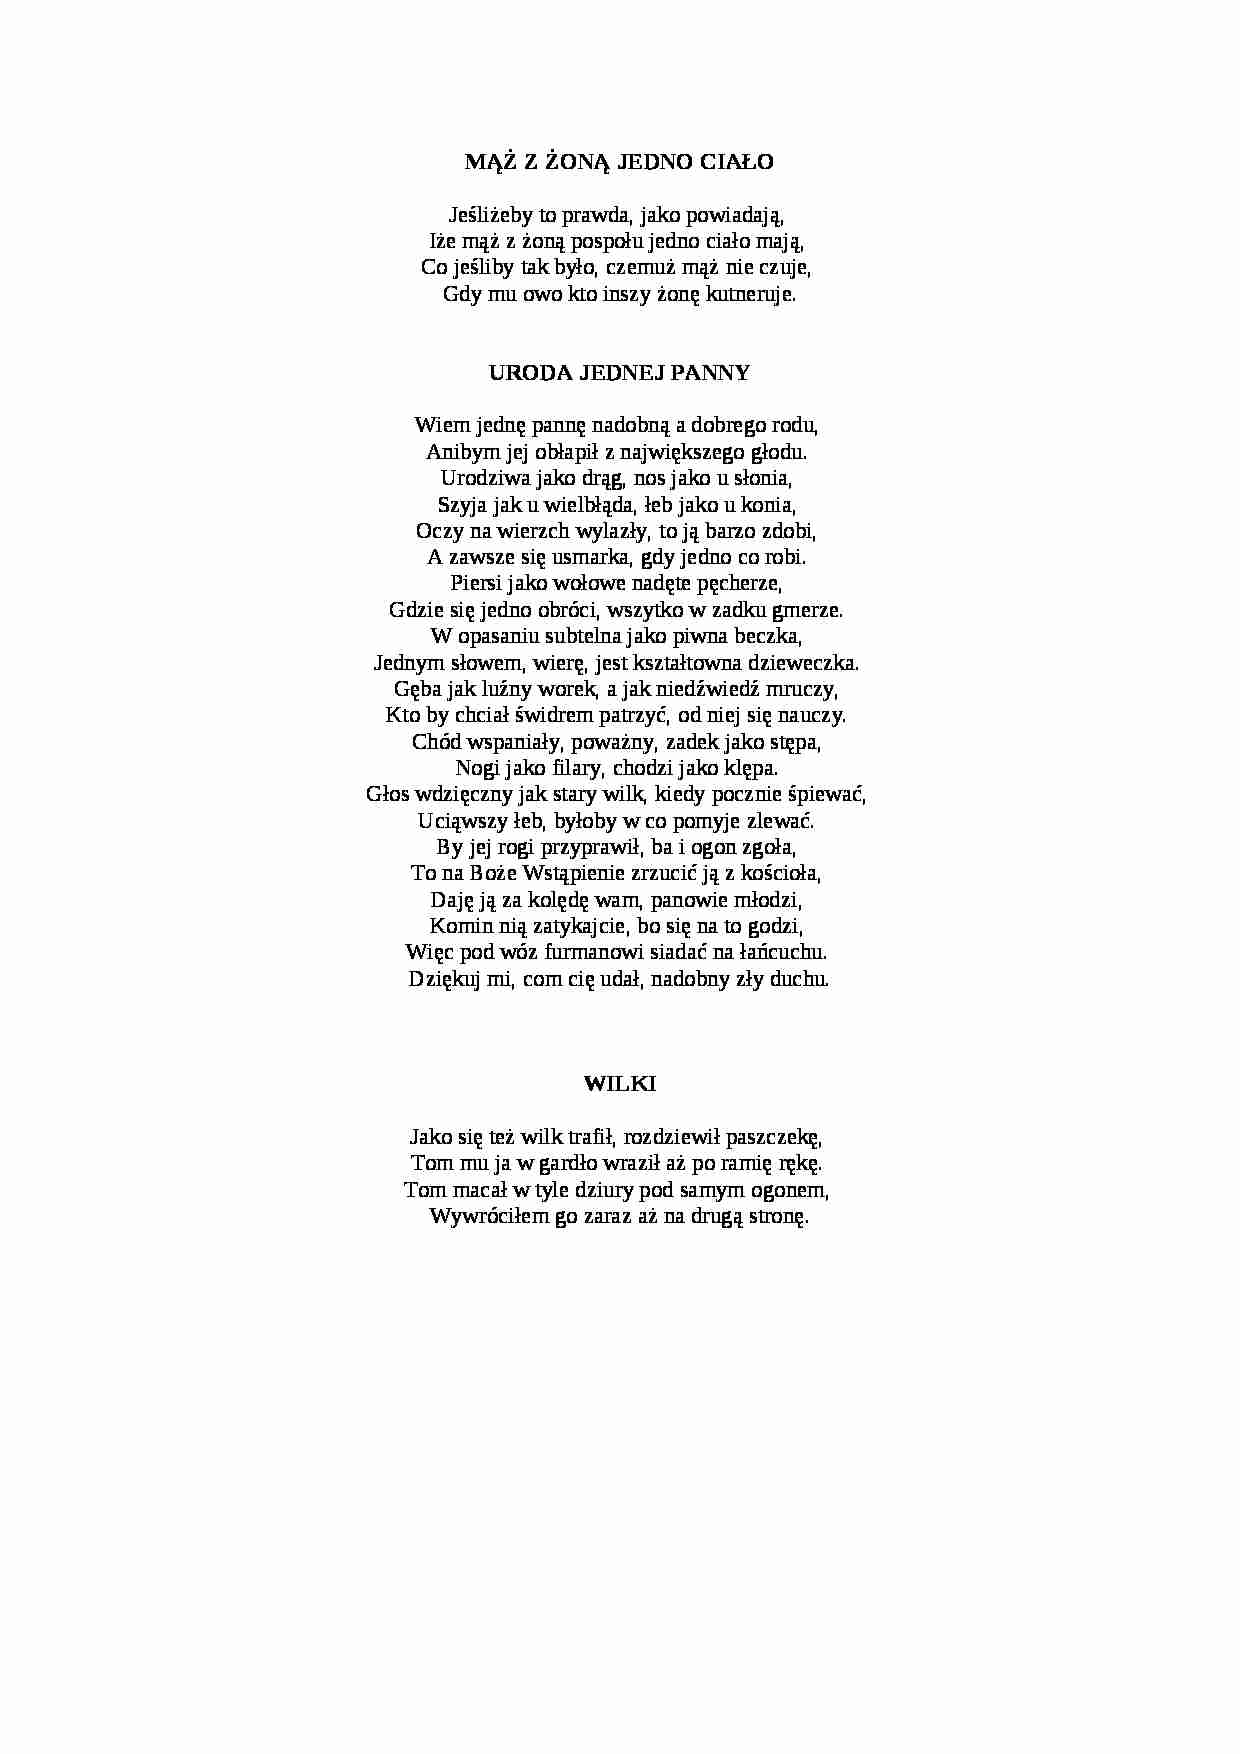 Satyra - wybrane wiersze - strona 1